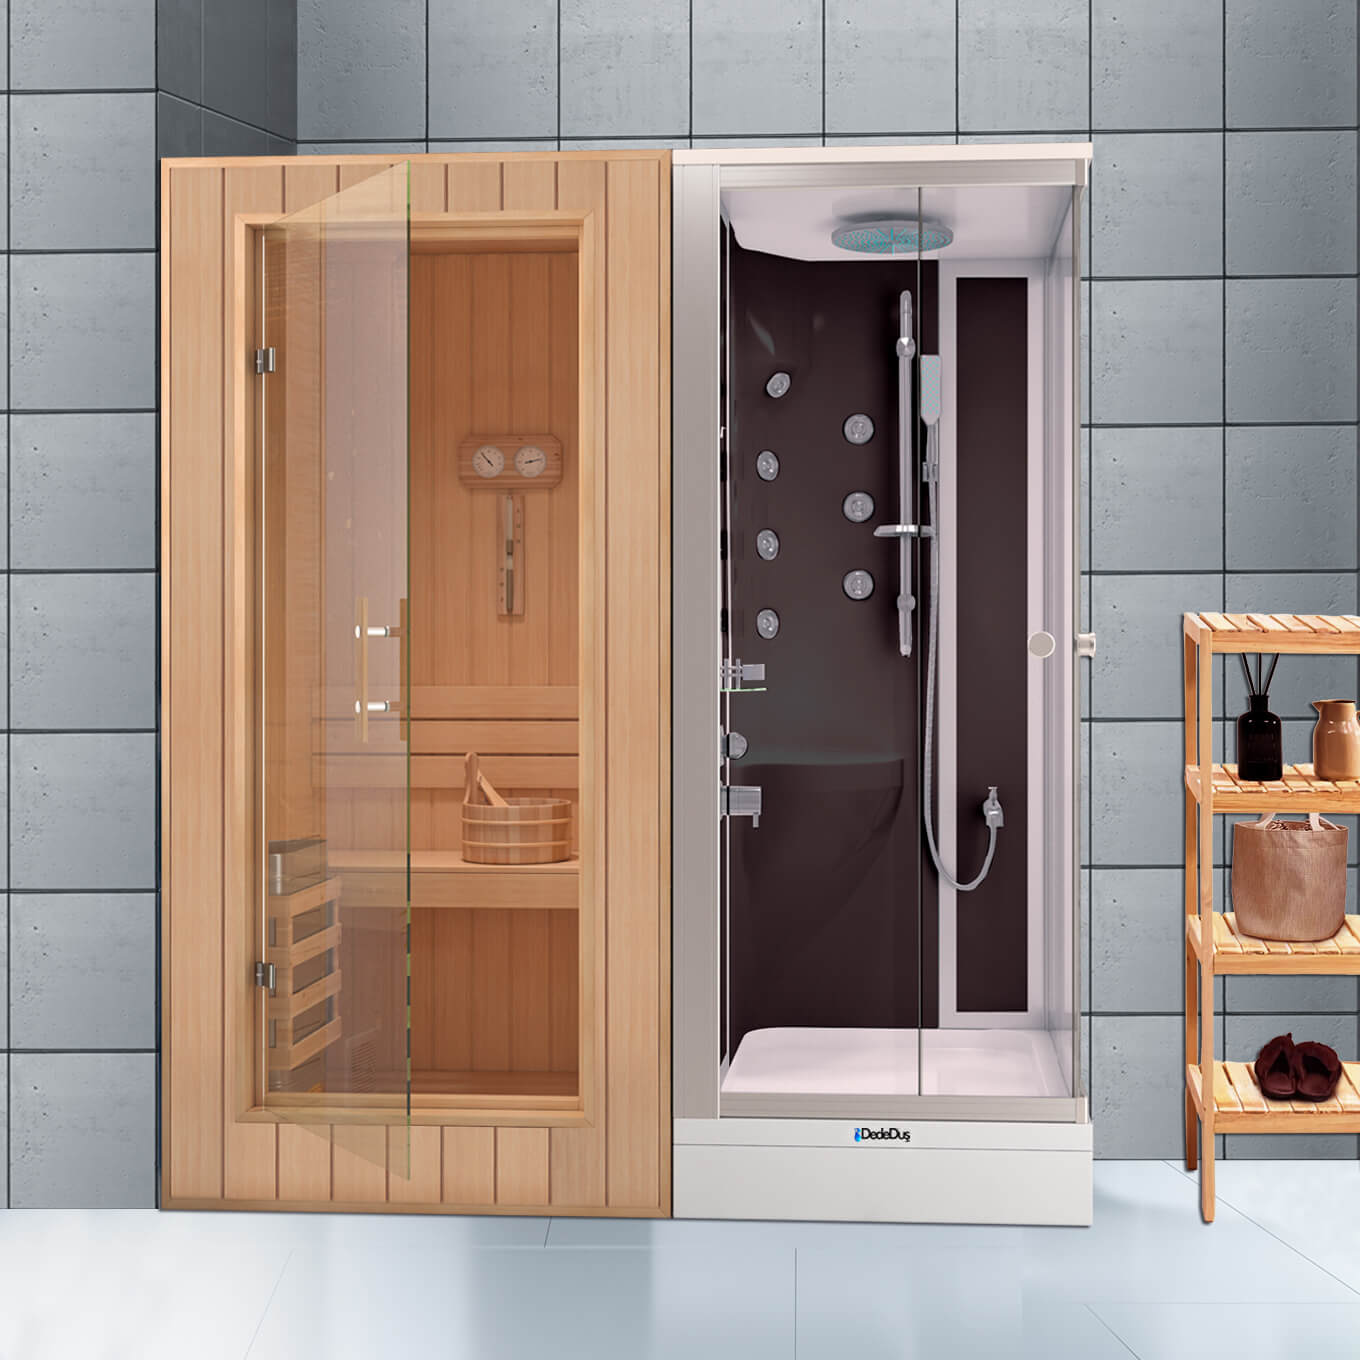 Siyah-beyaz dikdörtgen duş teknesi üzeri kompakt duşakabin ve sauna odası, Dede Duş, Çengelköy, Ümraniye, Dudullu